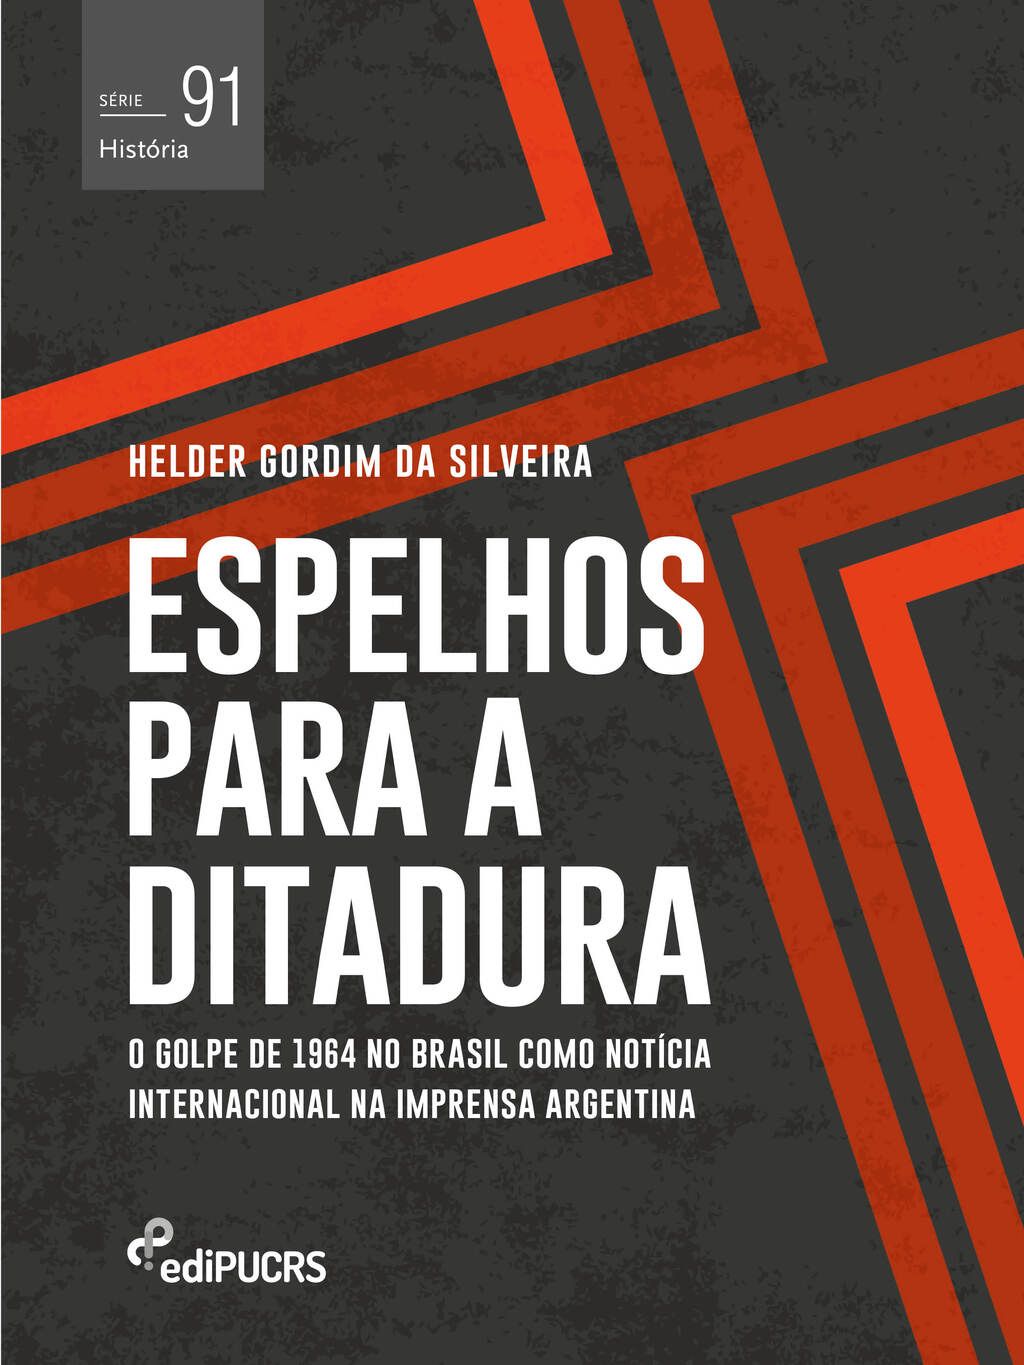 Espelhos para a ditadura: o golpe de 1964 no Brasil como notícia internacional na imprensa Argentina